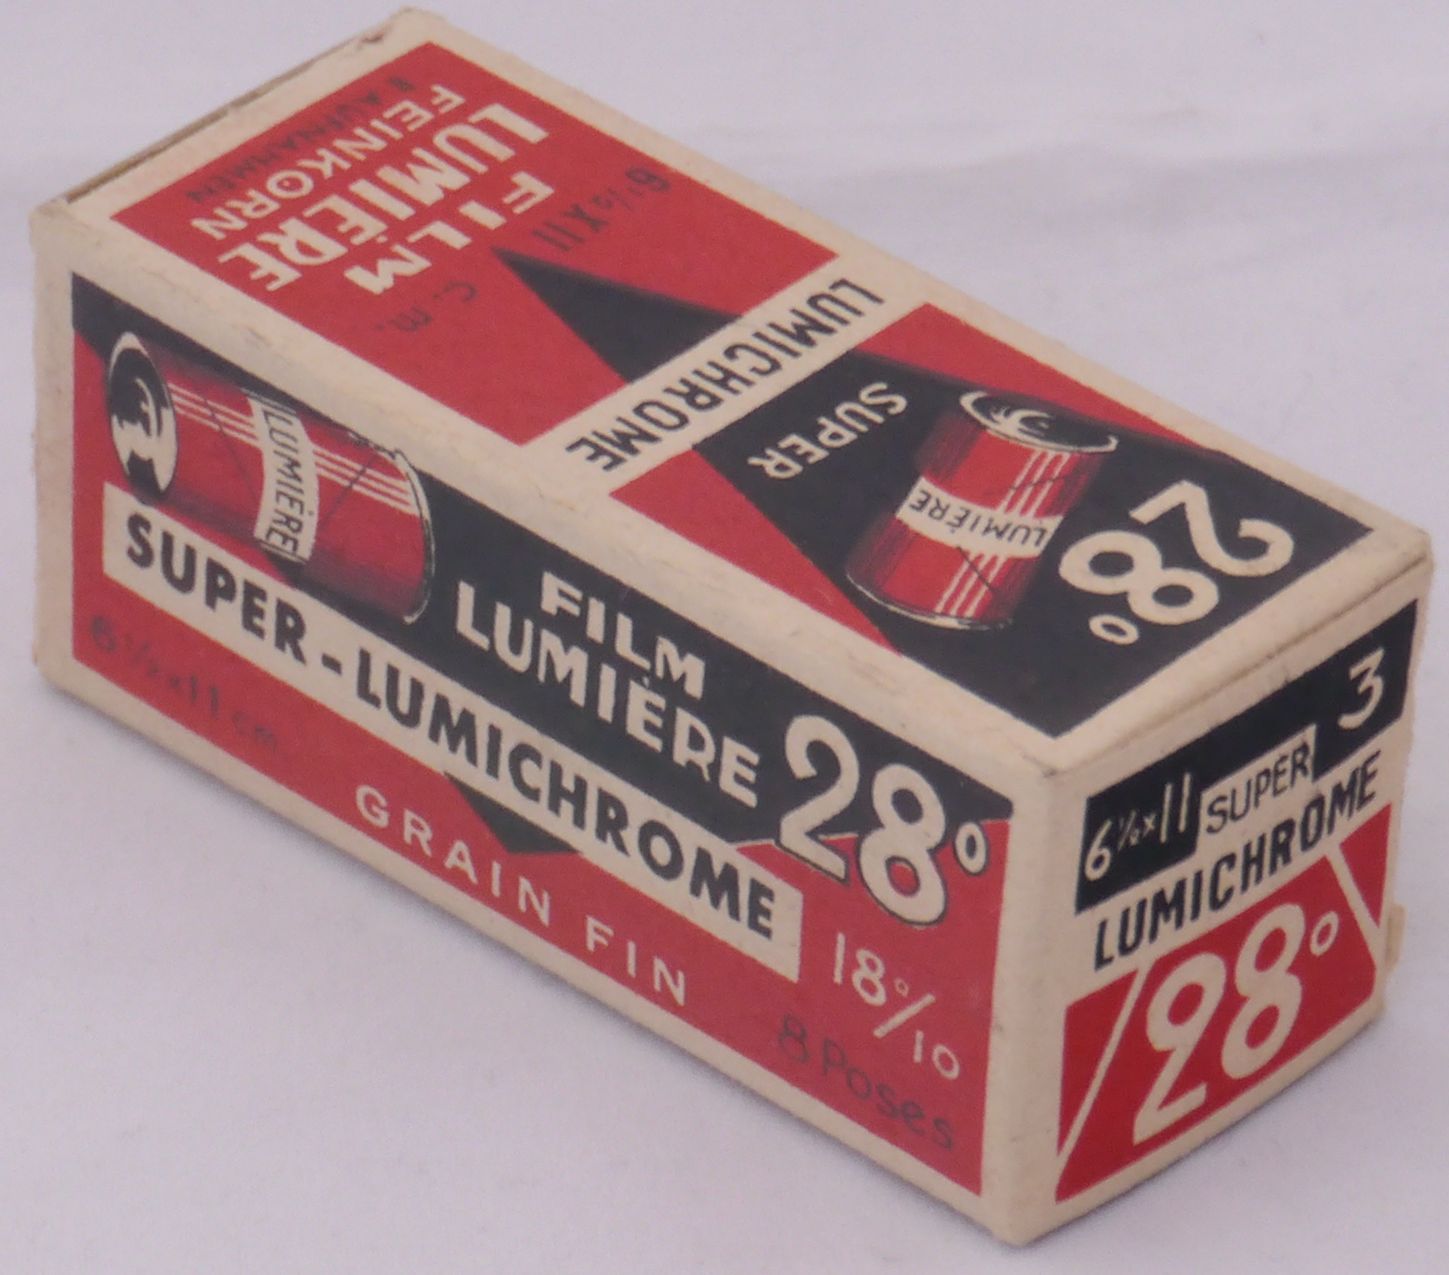 Super-Lumichrome 28° n°3 - format 6x9 cm - expire en 1950